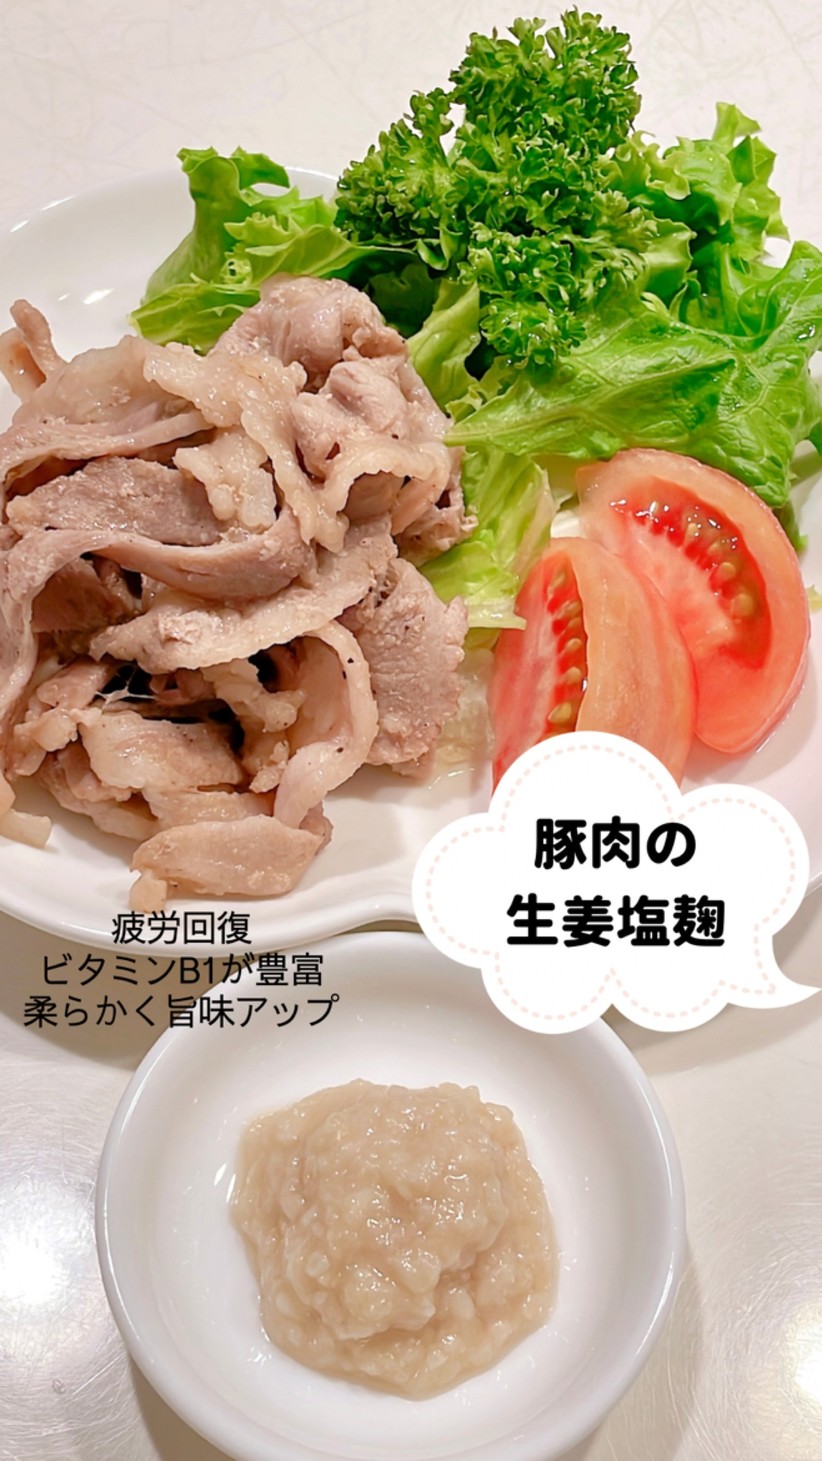 生姜塩麹を使った絶品豚肉の生姜焼きの画像